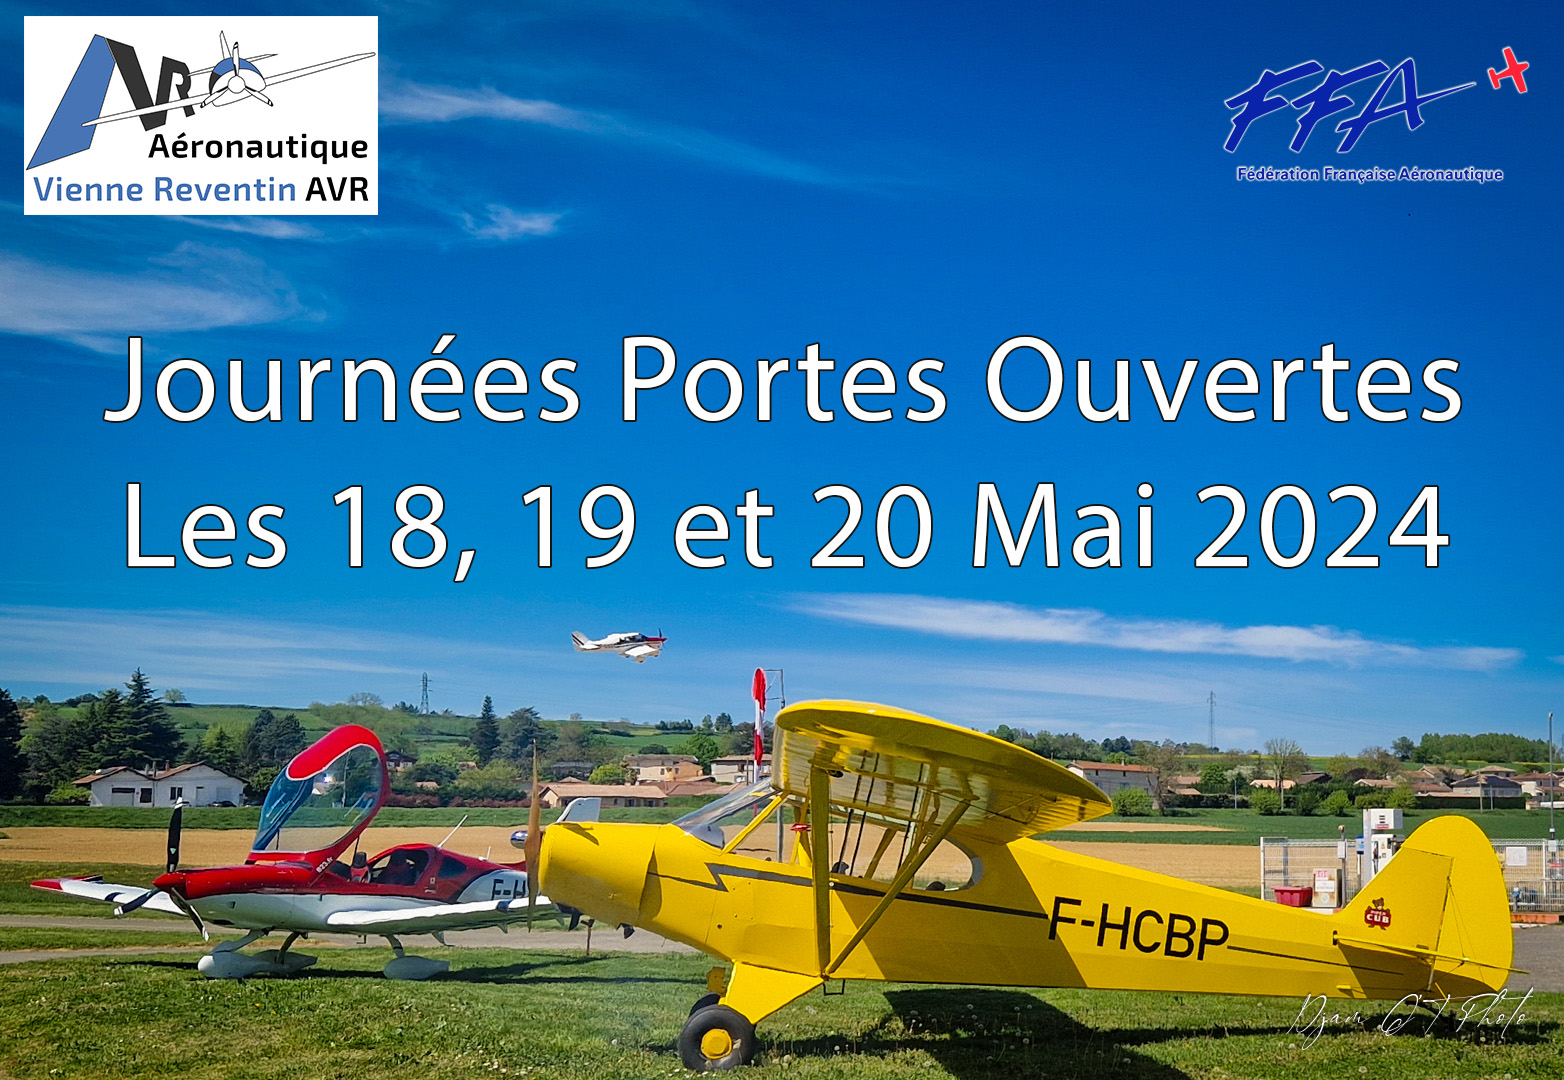 Aeronautique Vienne Reventin AVR Journée portes ouvertes les 18-19-20 Mai 2024